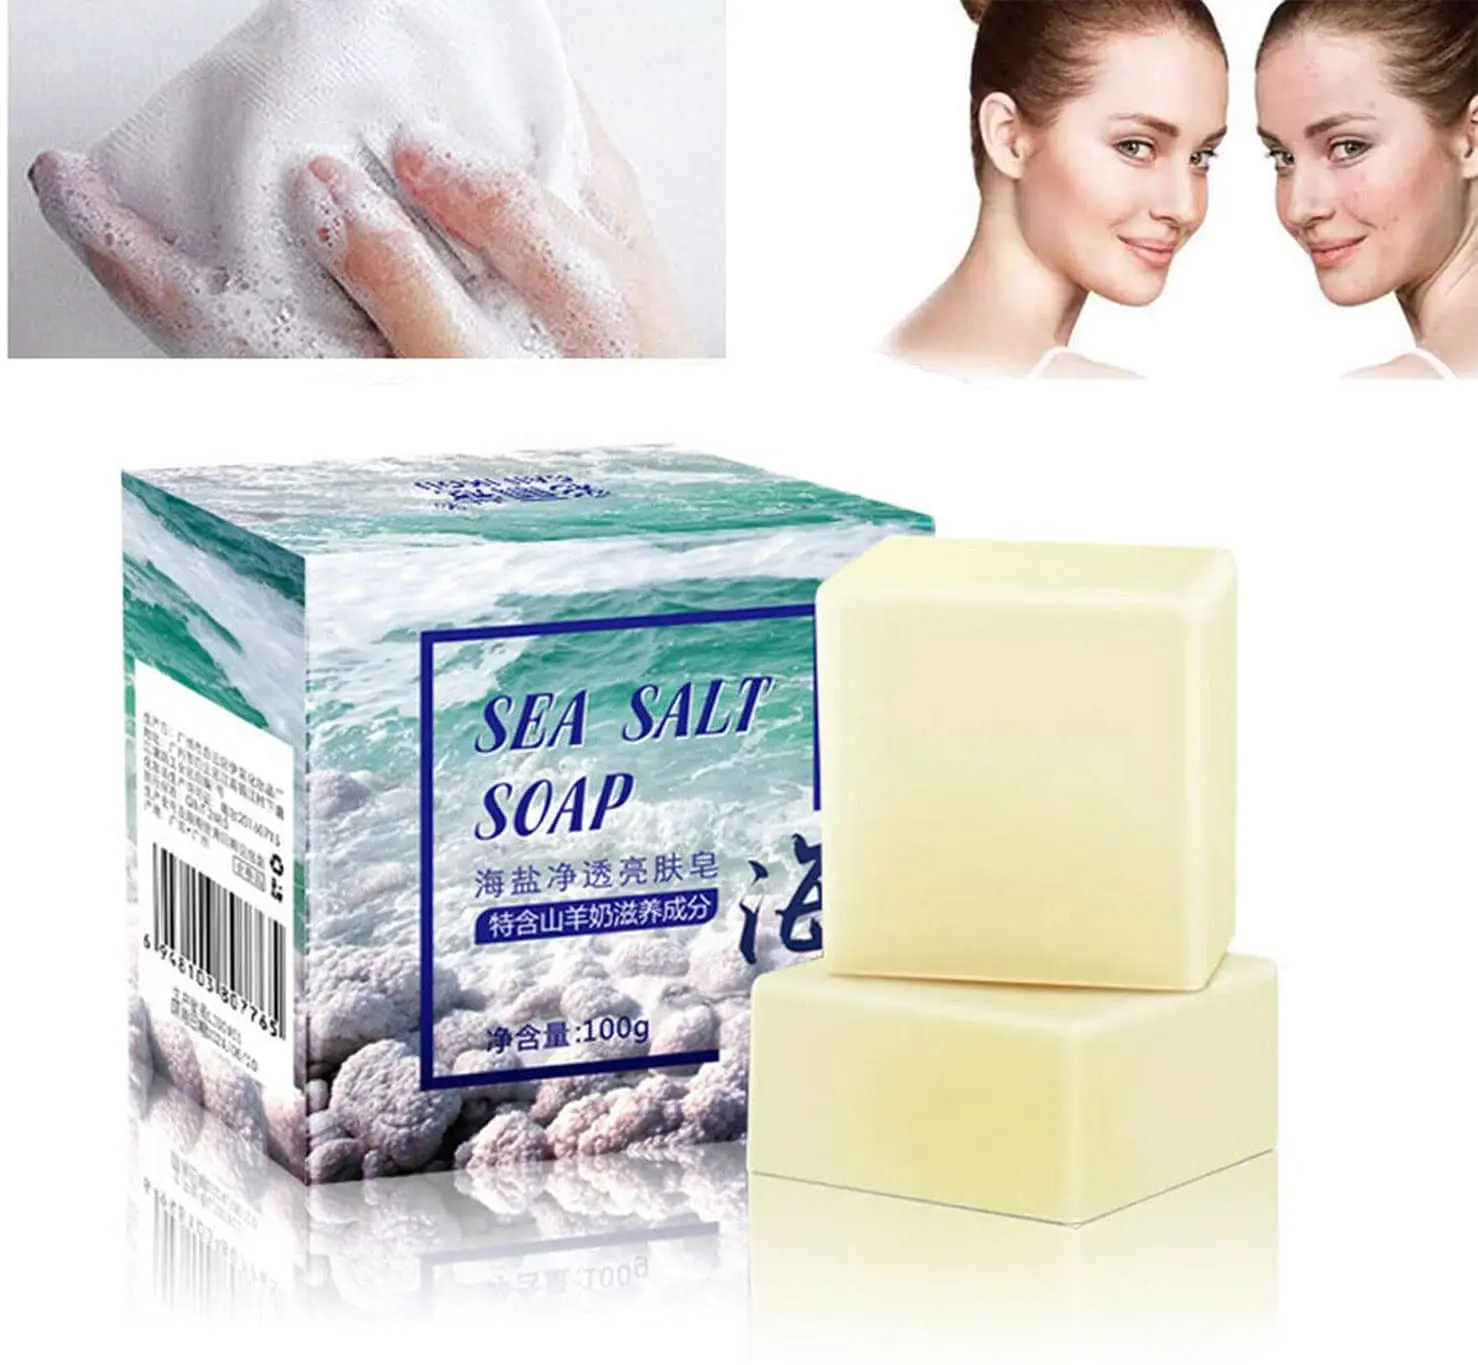 

Мыло из козьего молока, мыло с морской солью, для удаления пор, средство для ухода за лицом, мыло с контролем жирности, мыло для ванны